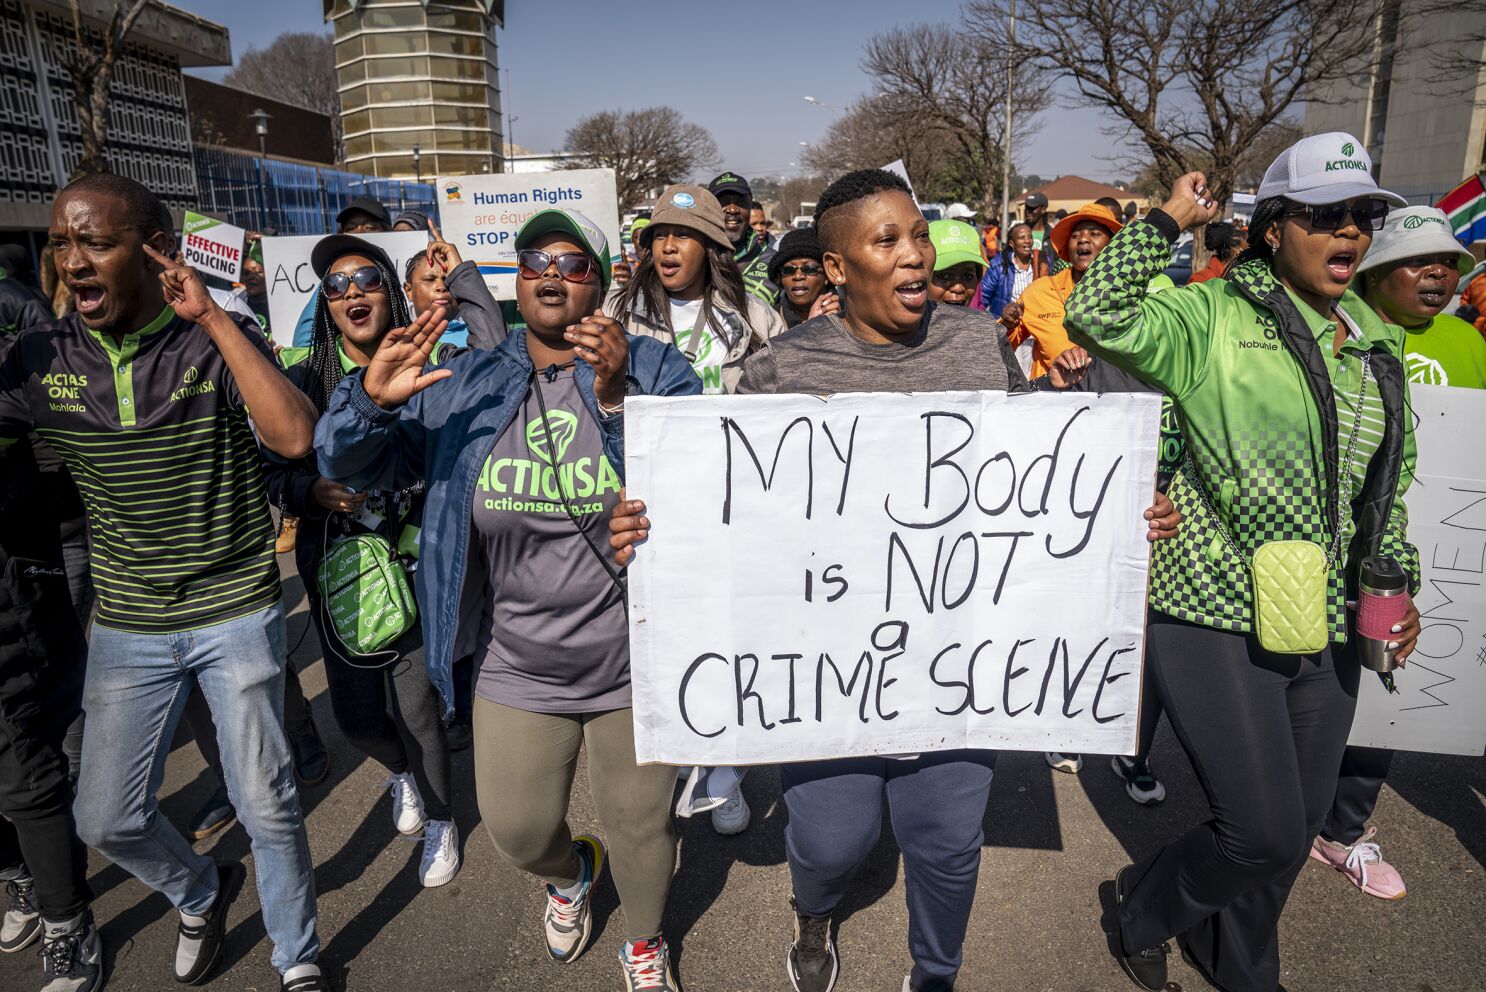 Horrific rape case raises South Africa ghosts - Los Angeles Times